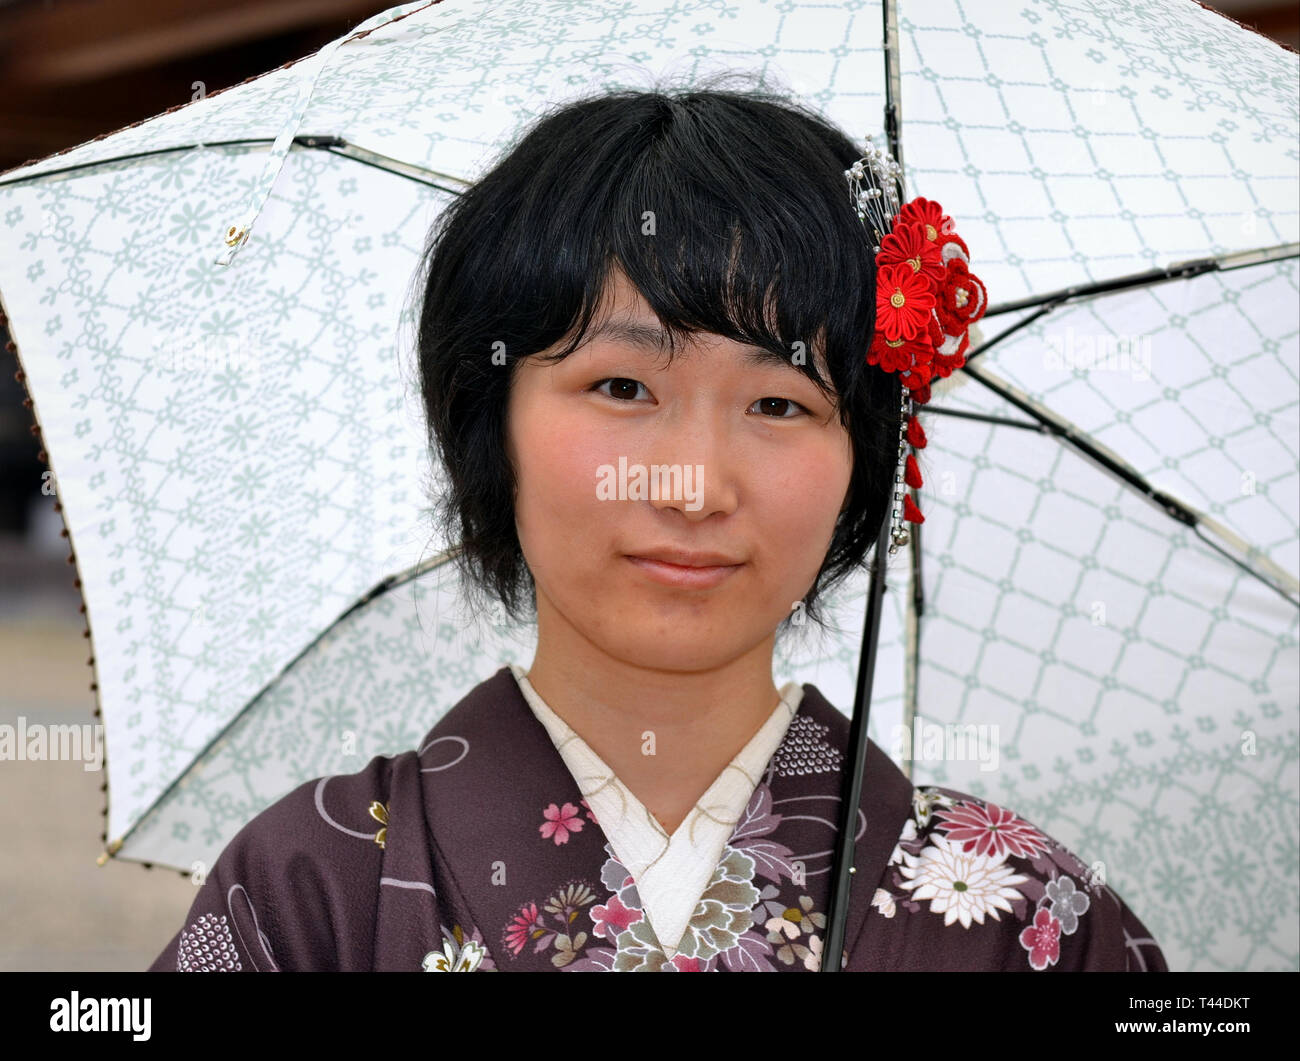 Junge japanische Frau mit Regenschirm posiert für die Kamera an einem regnerischen Tag. Stockfoto